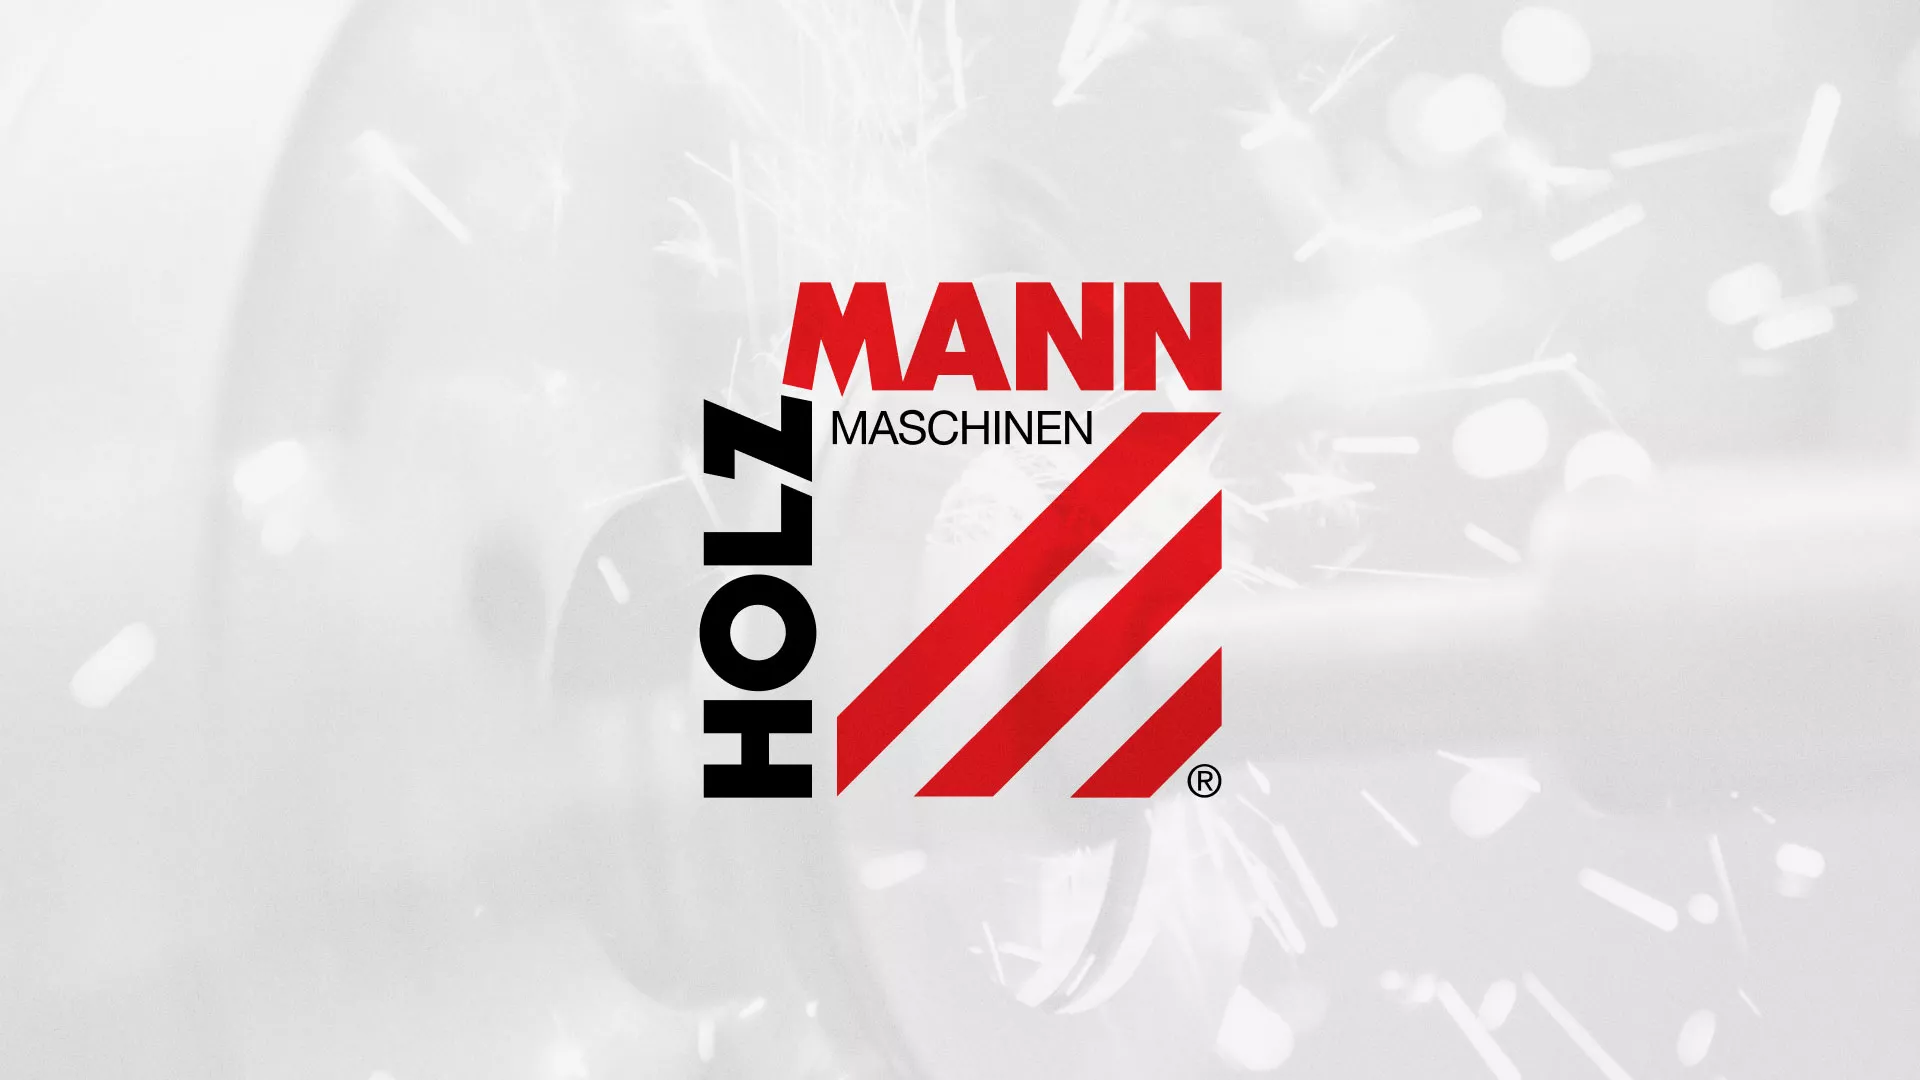 Создание сайта компании «HOLZMANN Maschinen GmbH» в Лесосибирске